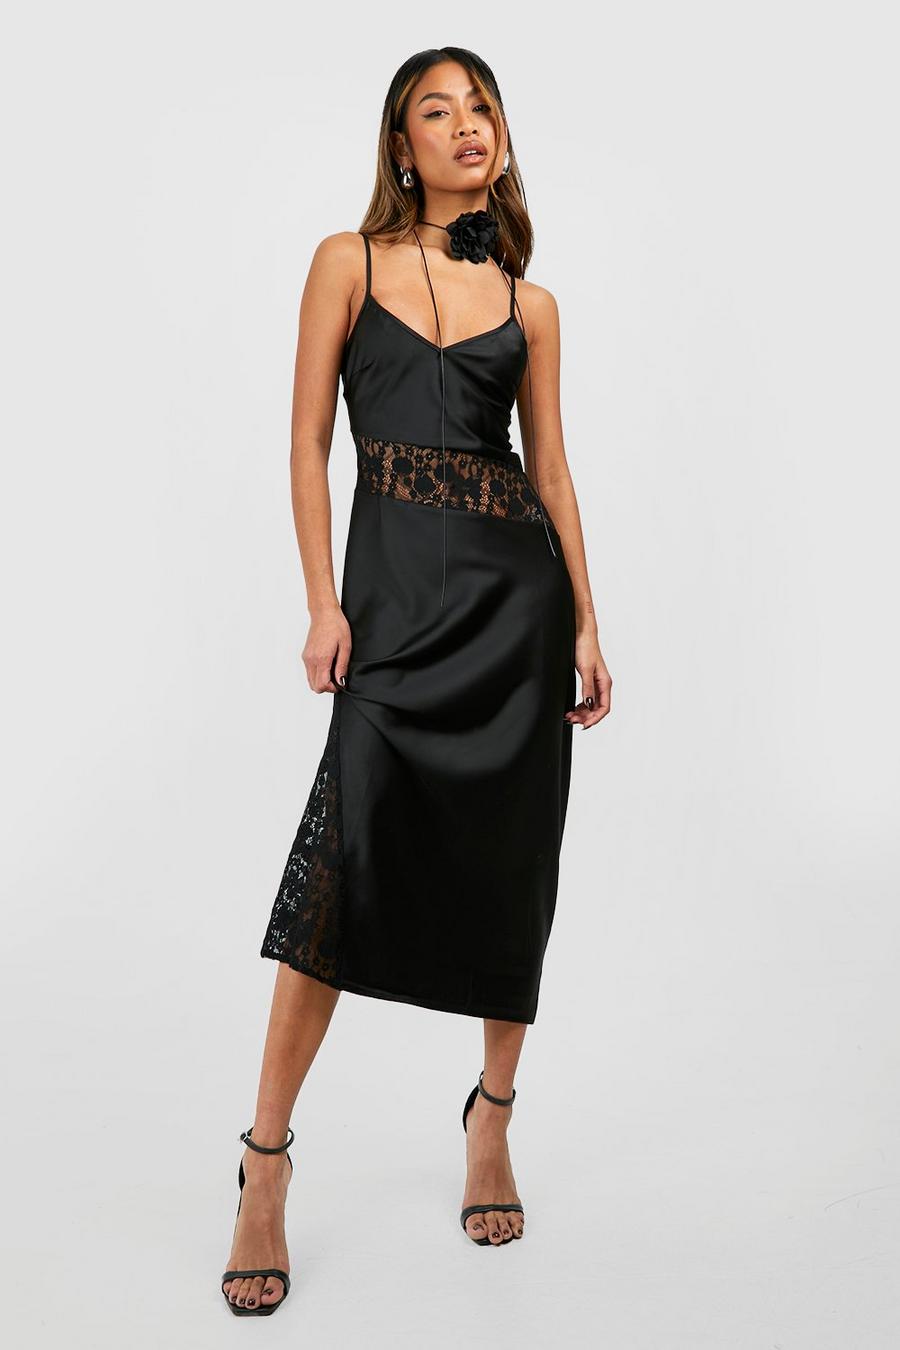 Boohoo Premium Lace Cami Midi Dress, $53, Asos